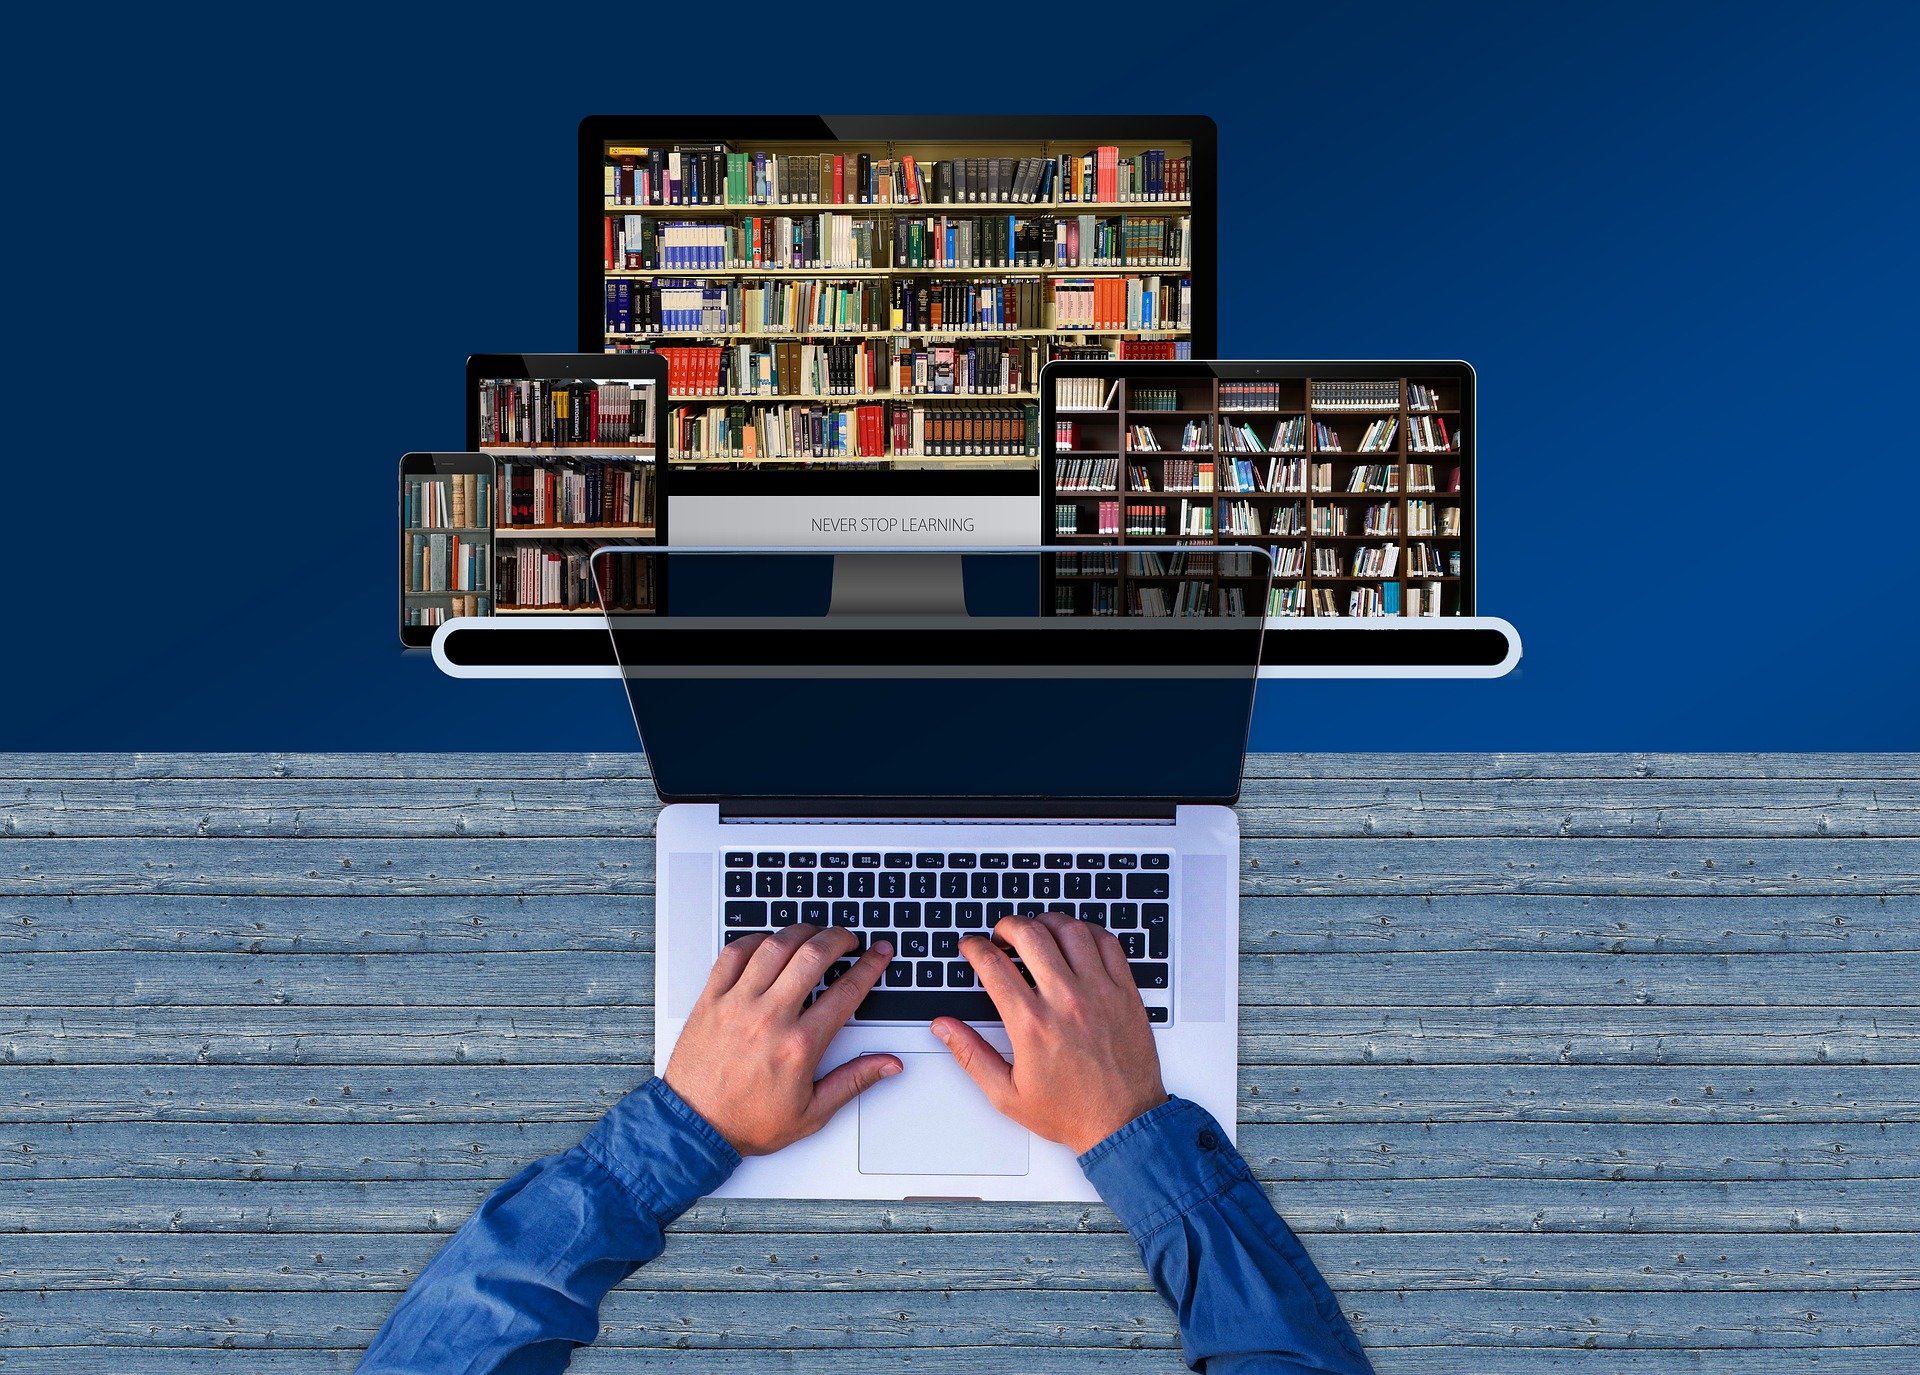 Безплатна електронна образователна платформа за онлайн уроци пуска МОН.
Тя ще бъде